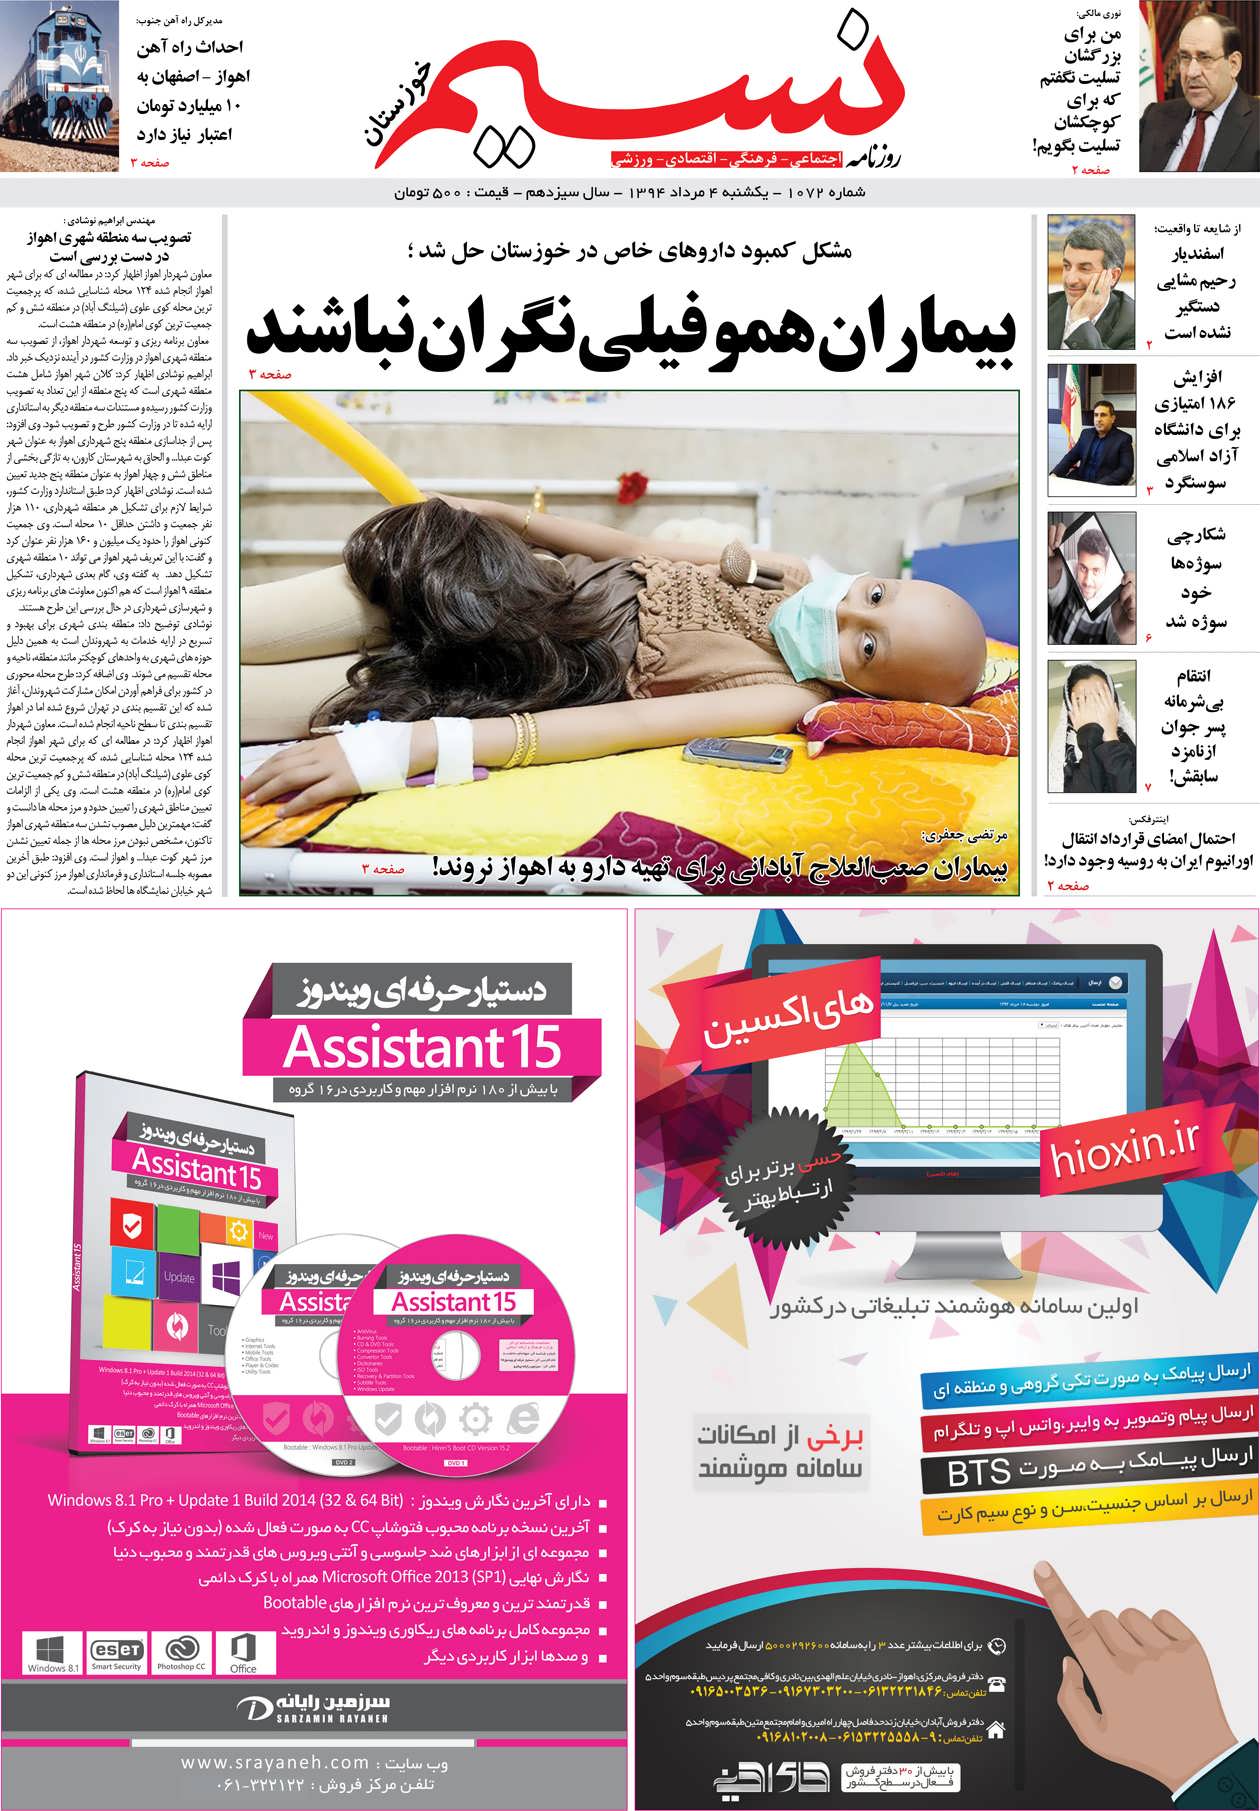 صفحه اصلی روزنامه نسیم شماره 1072